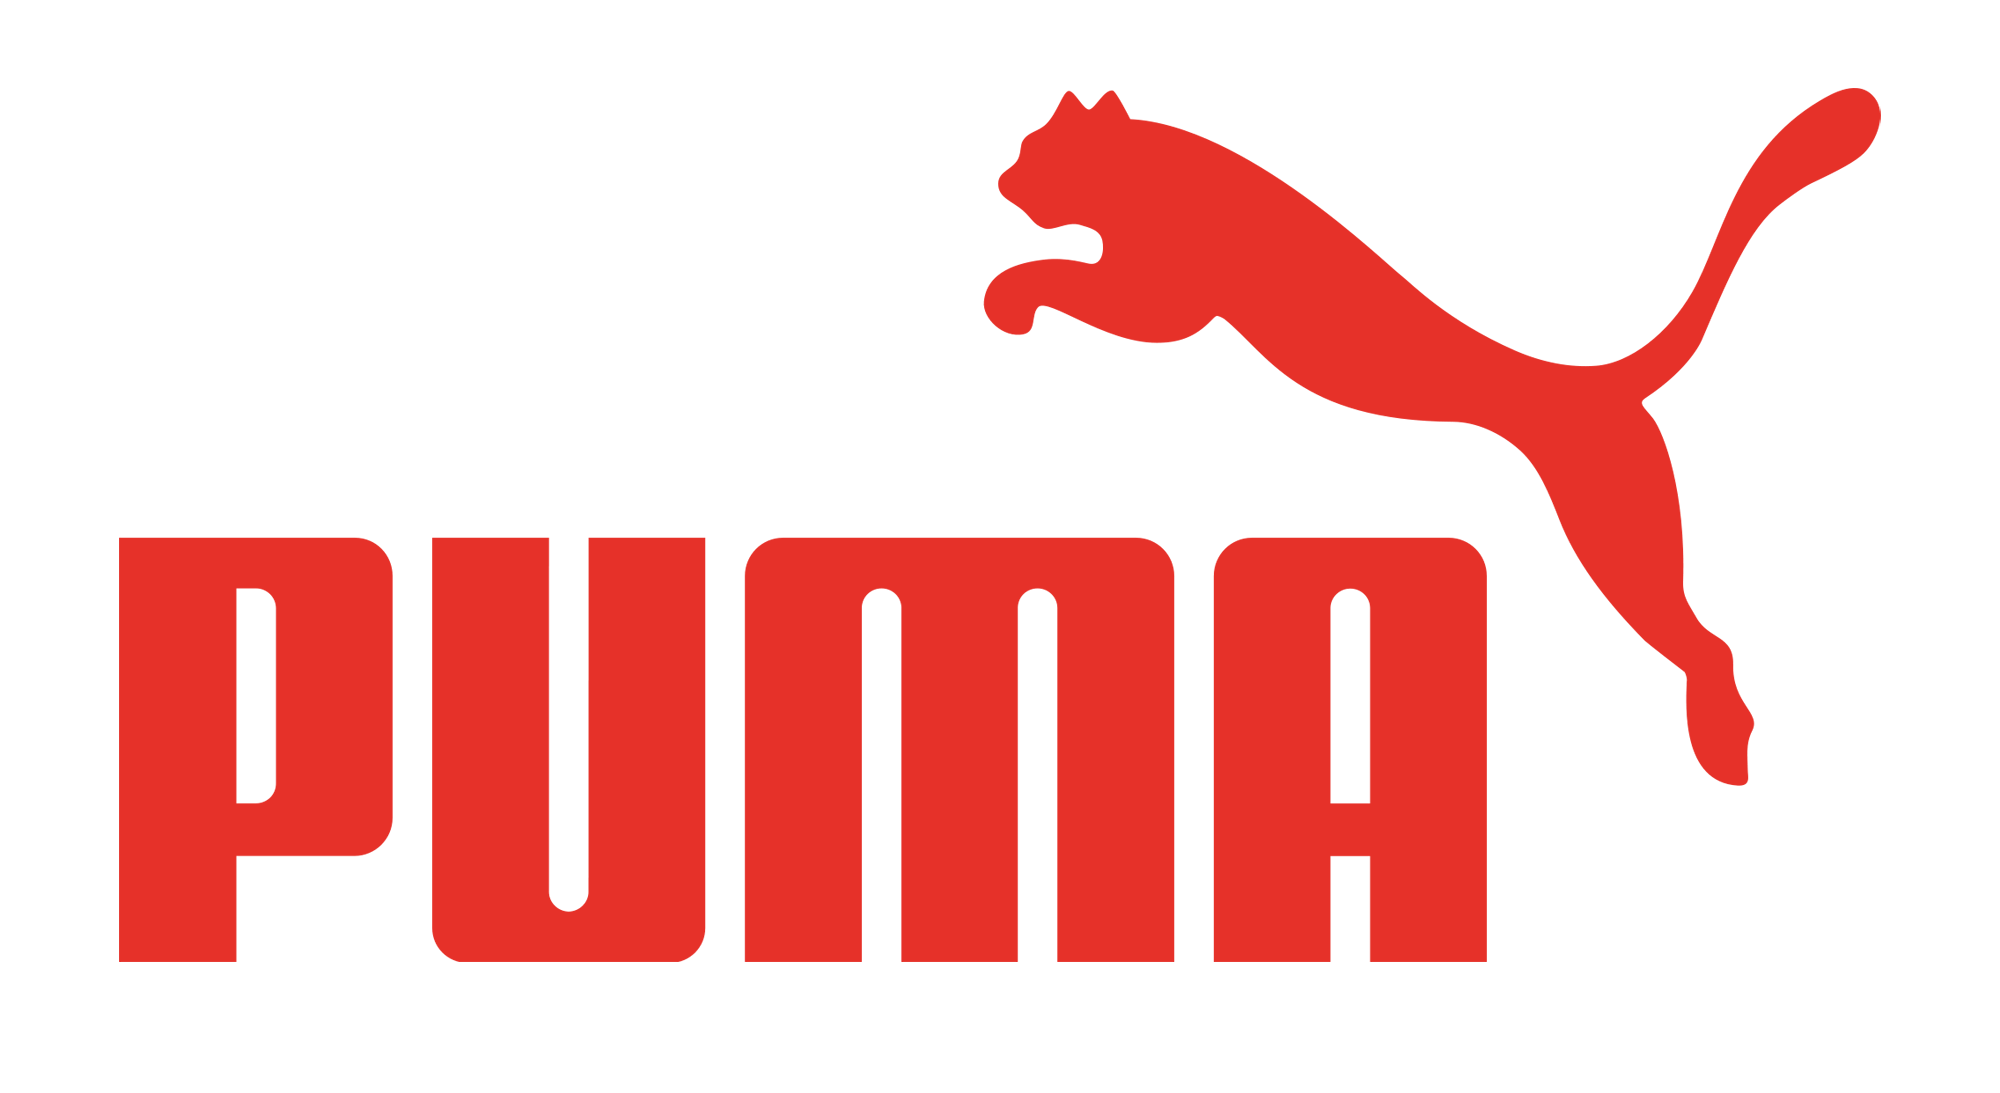 Puma-logo